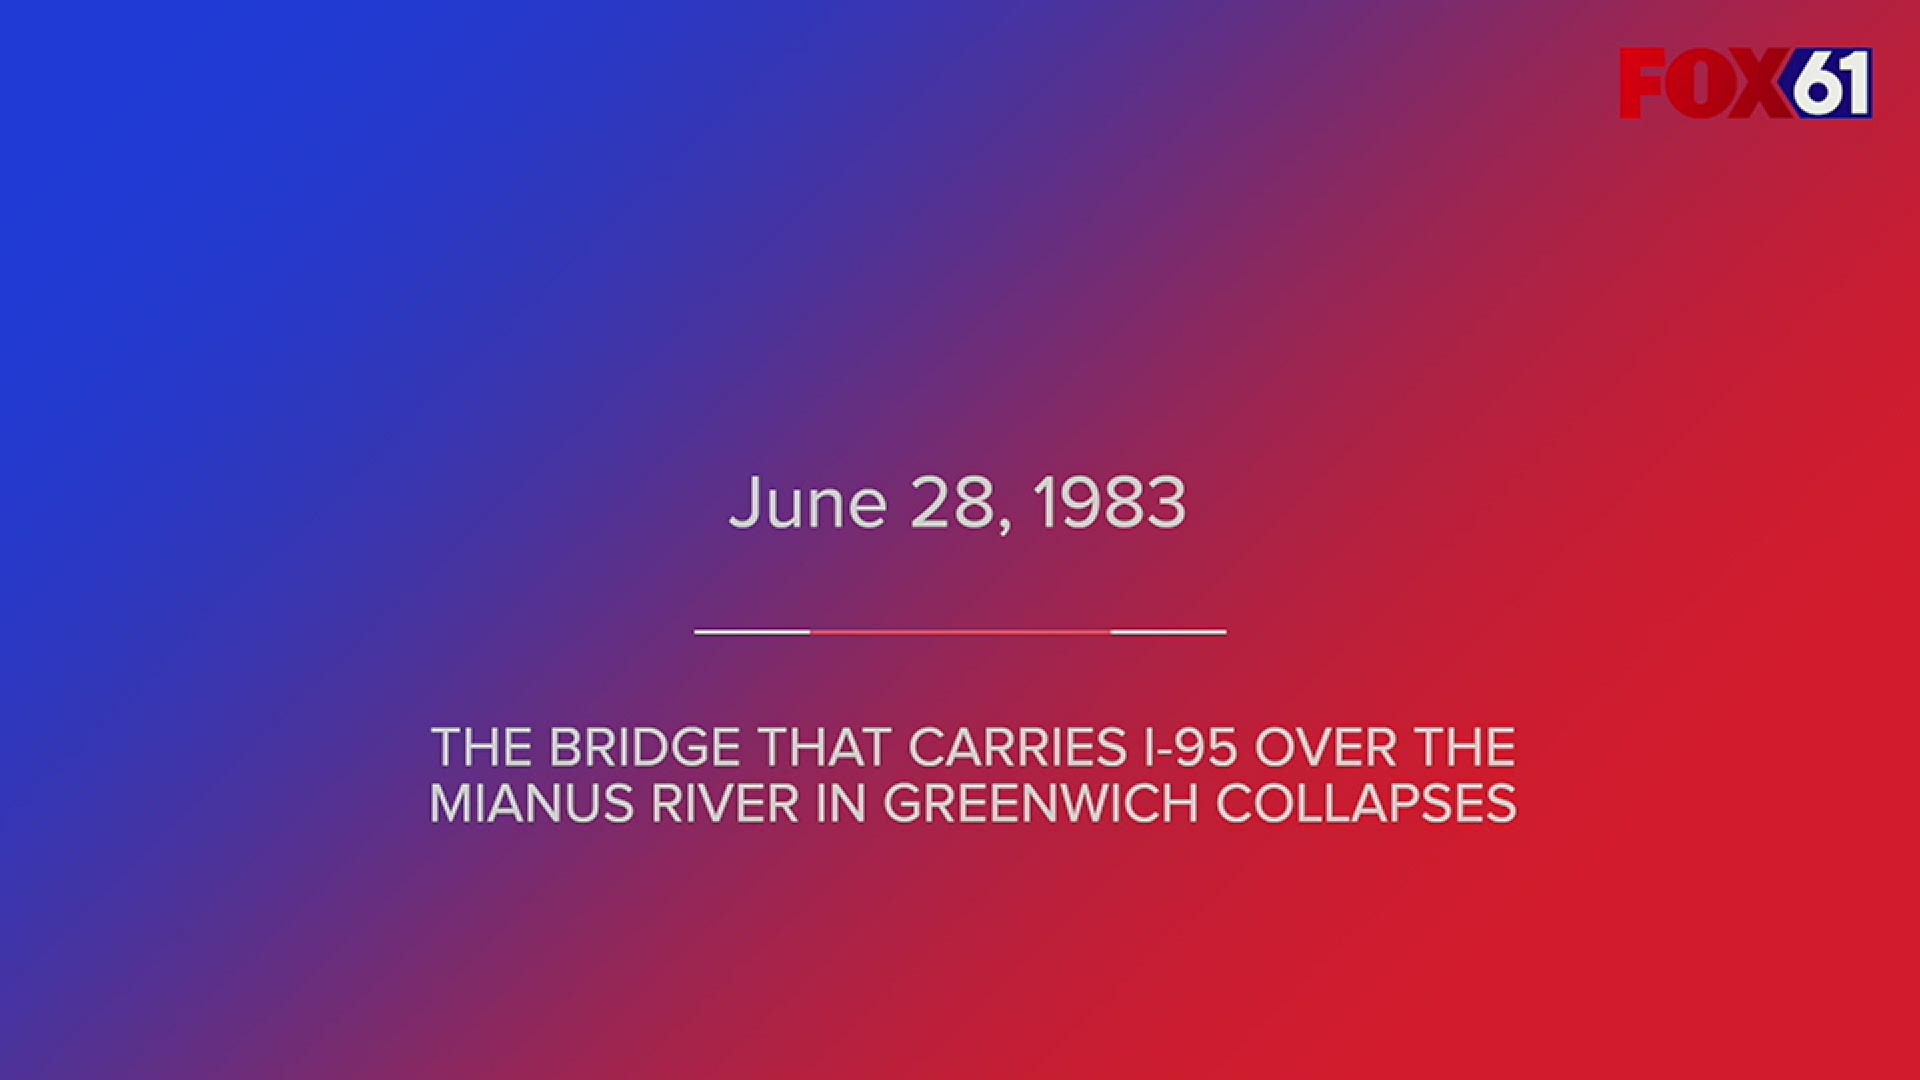 The I-95 bridge collapsed in 1983